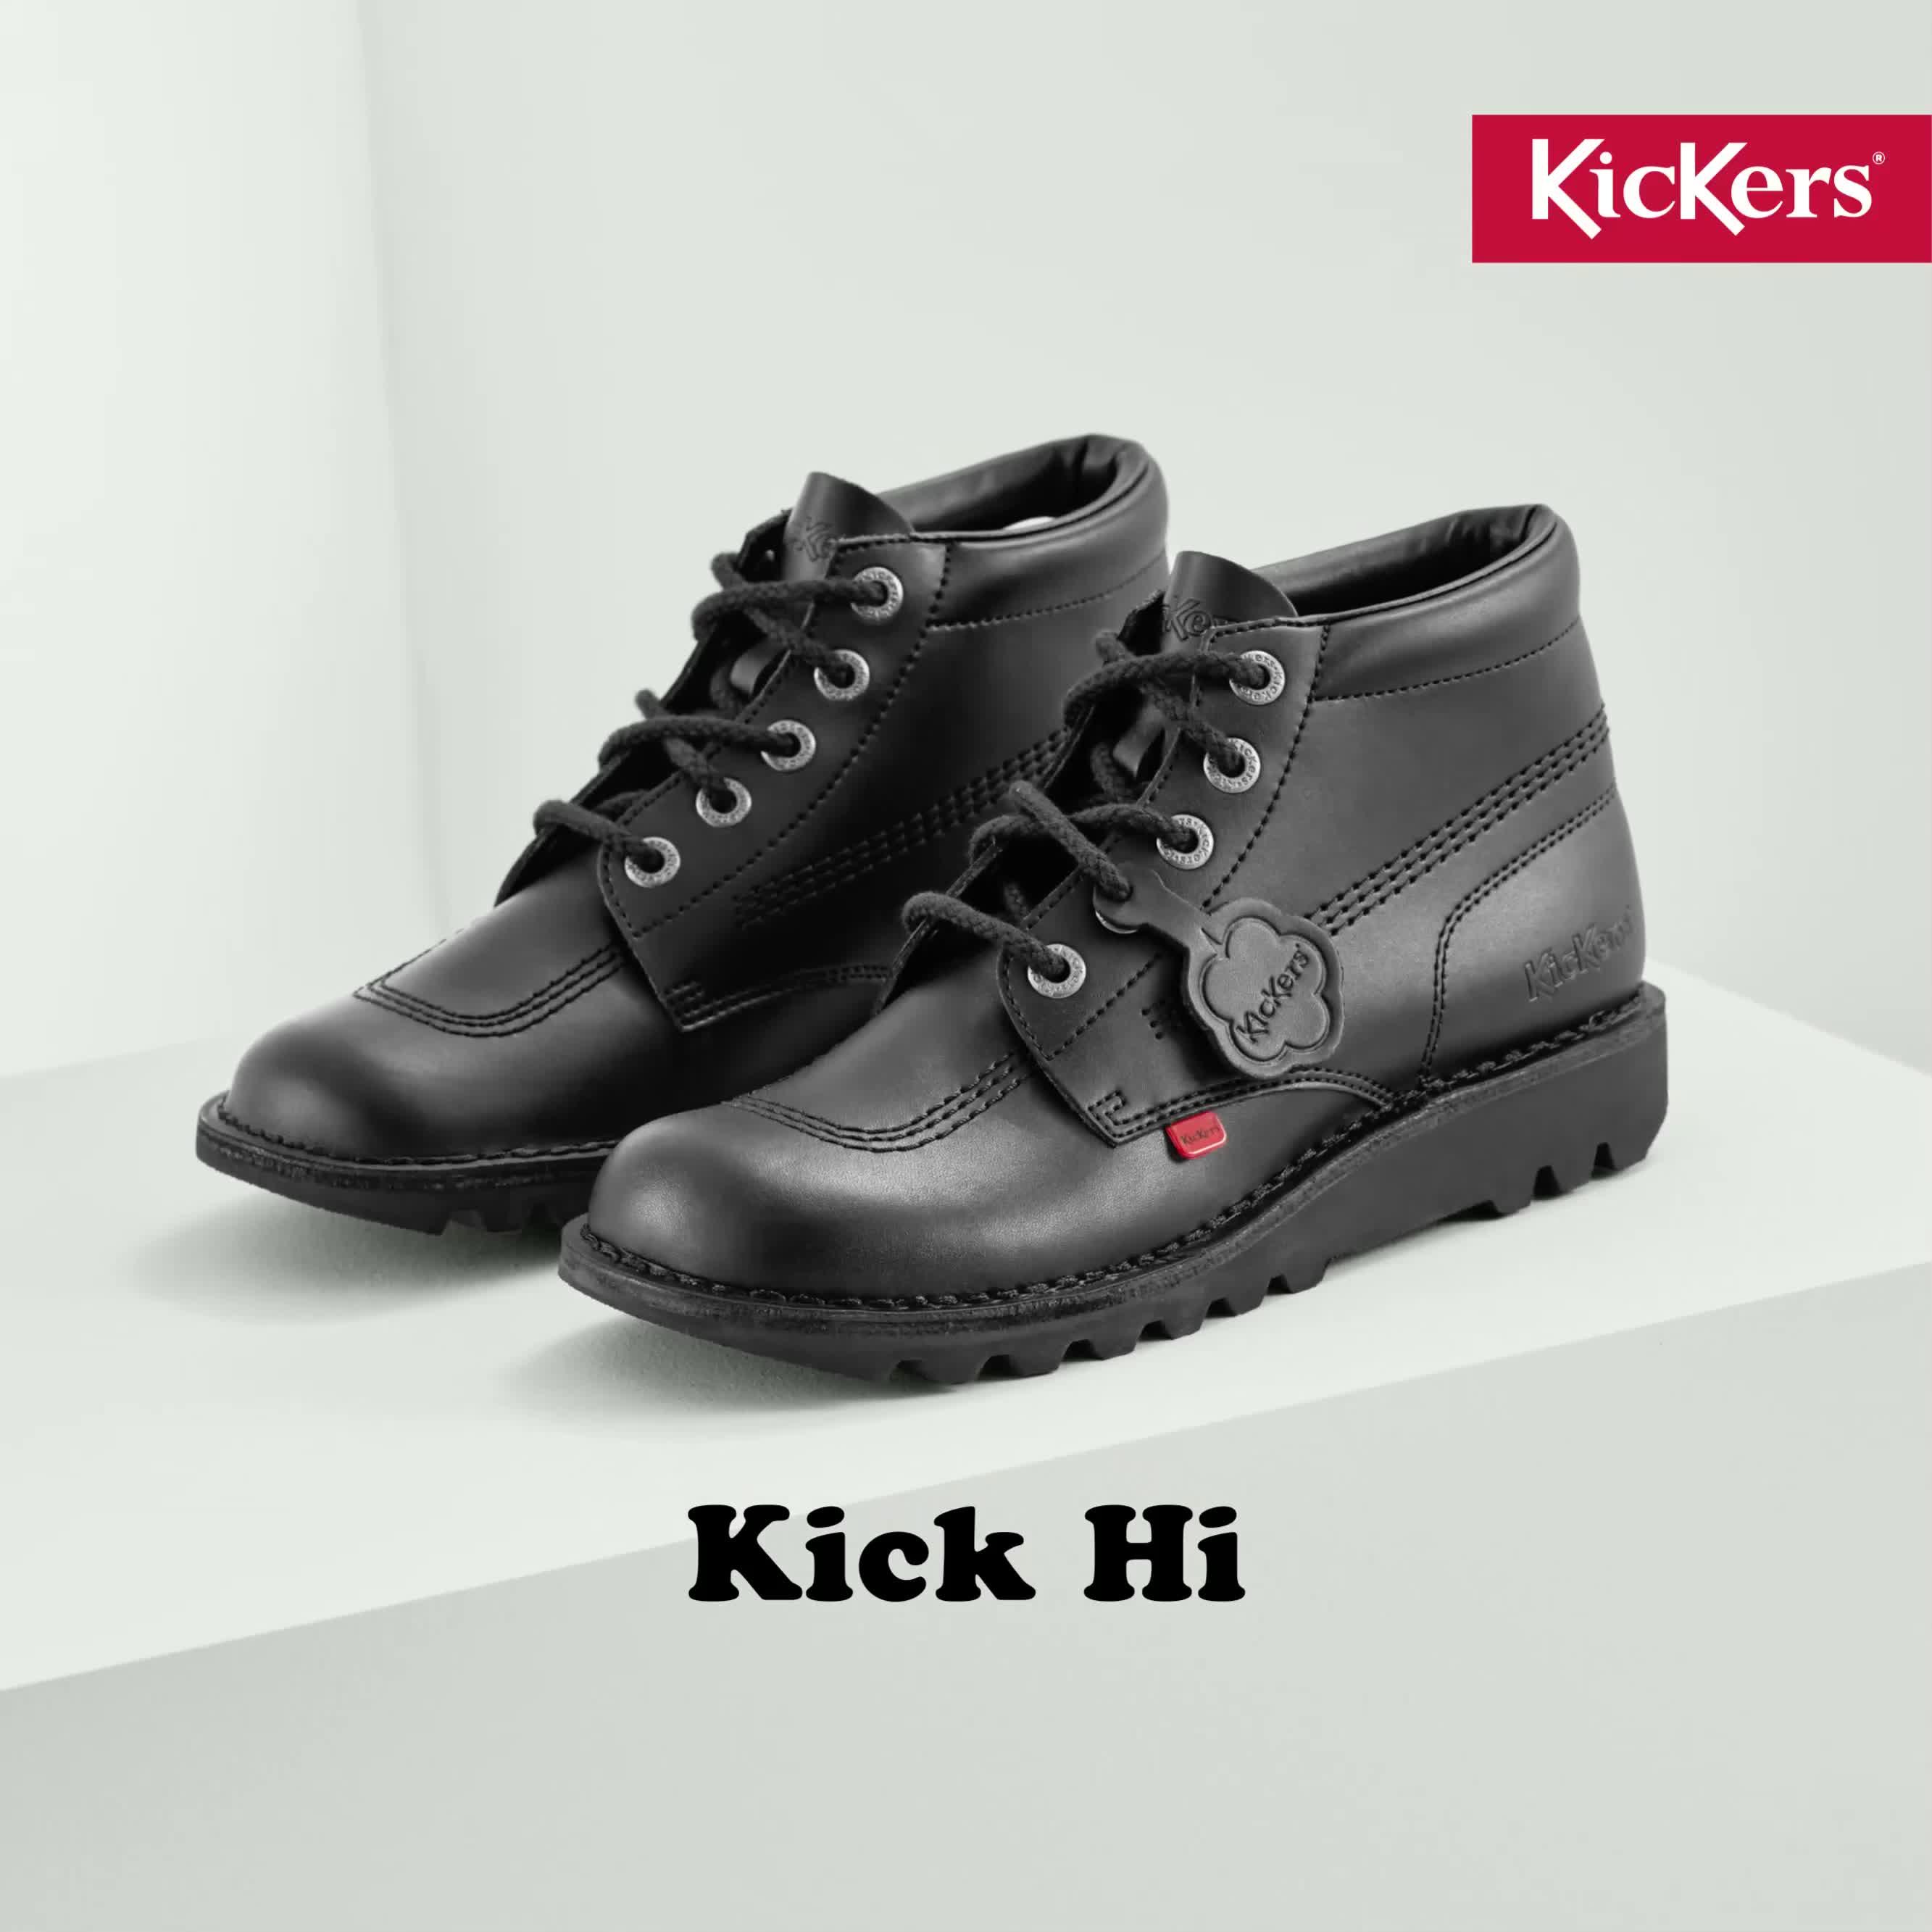 Kickers Kick Hi Zip Junior, School Shoes